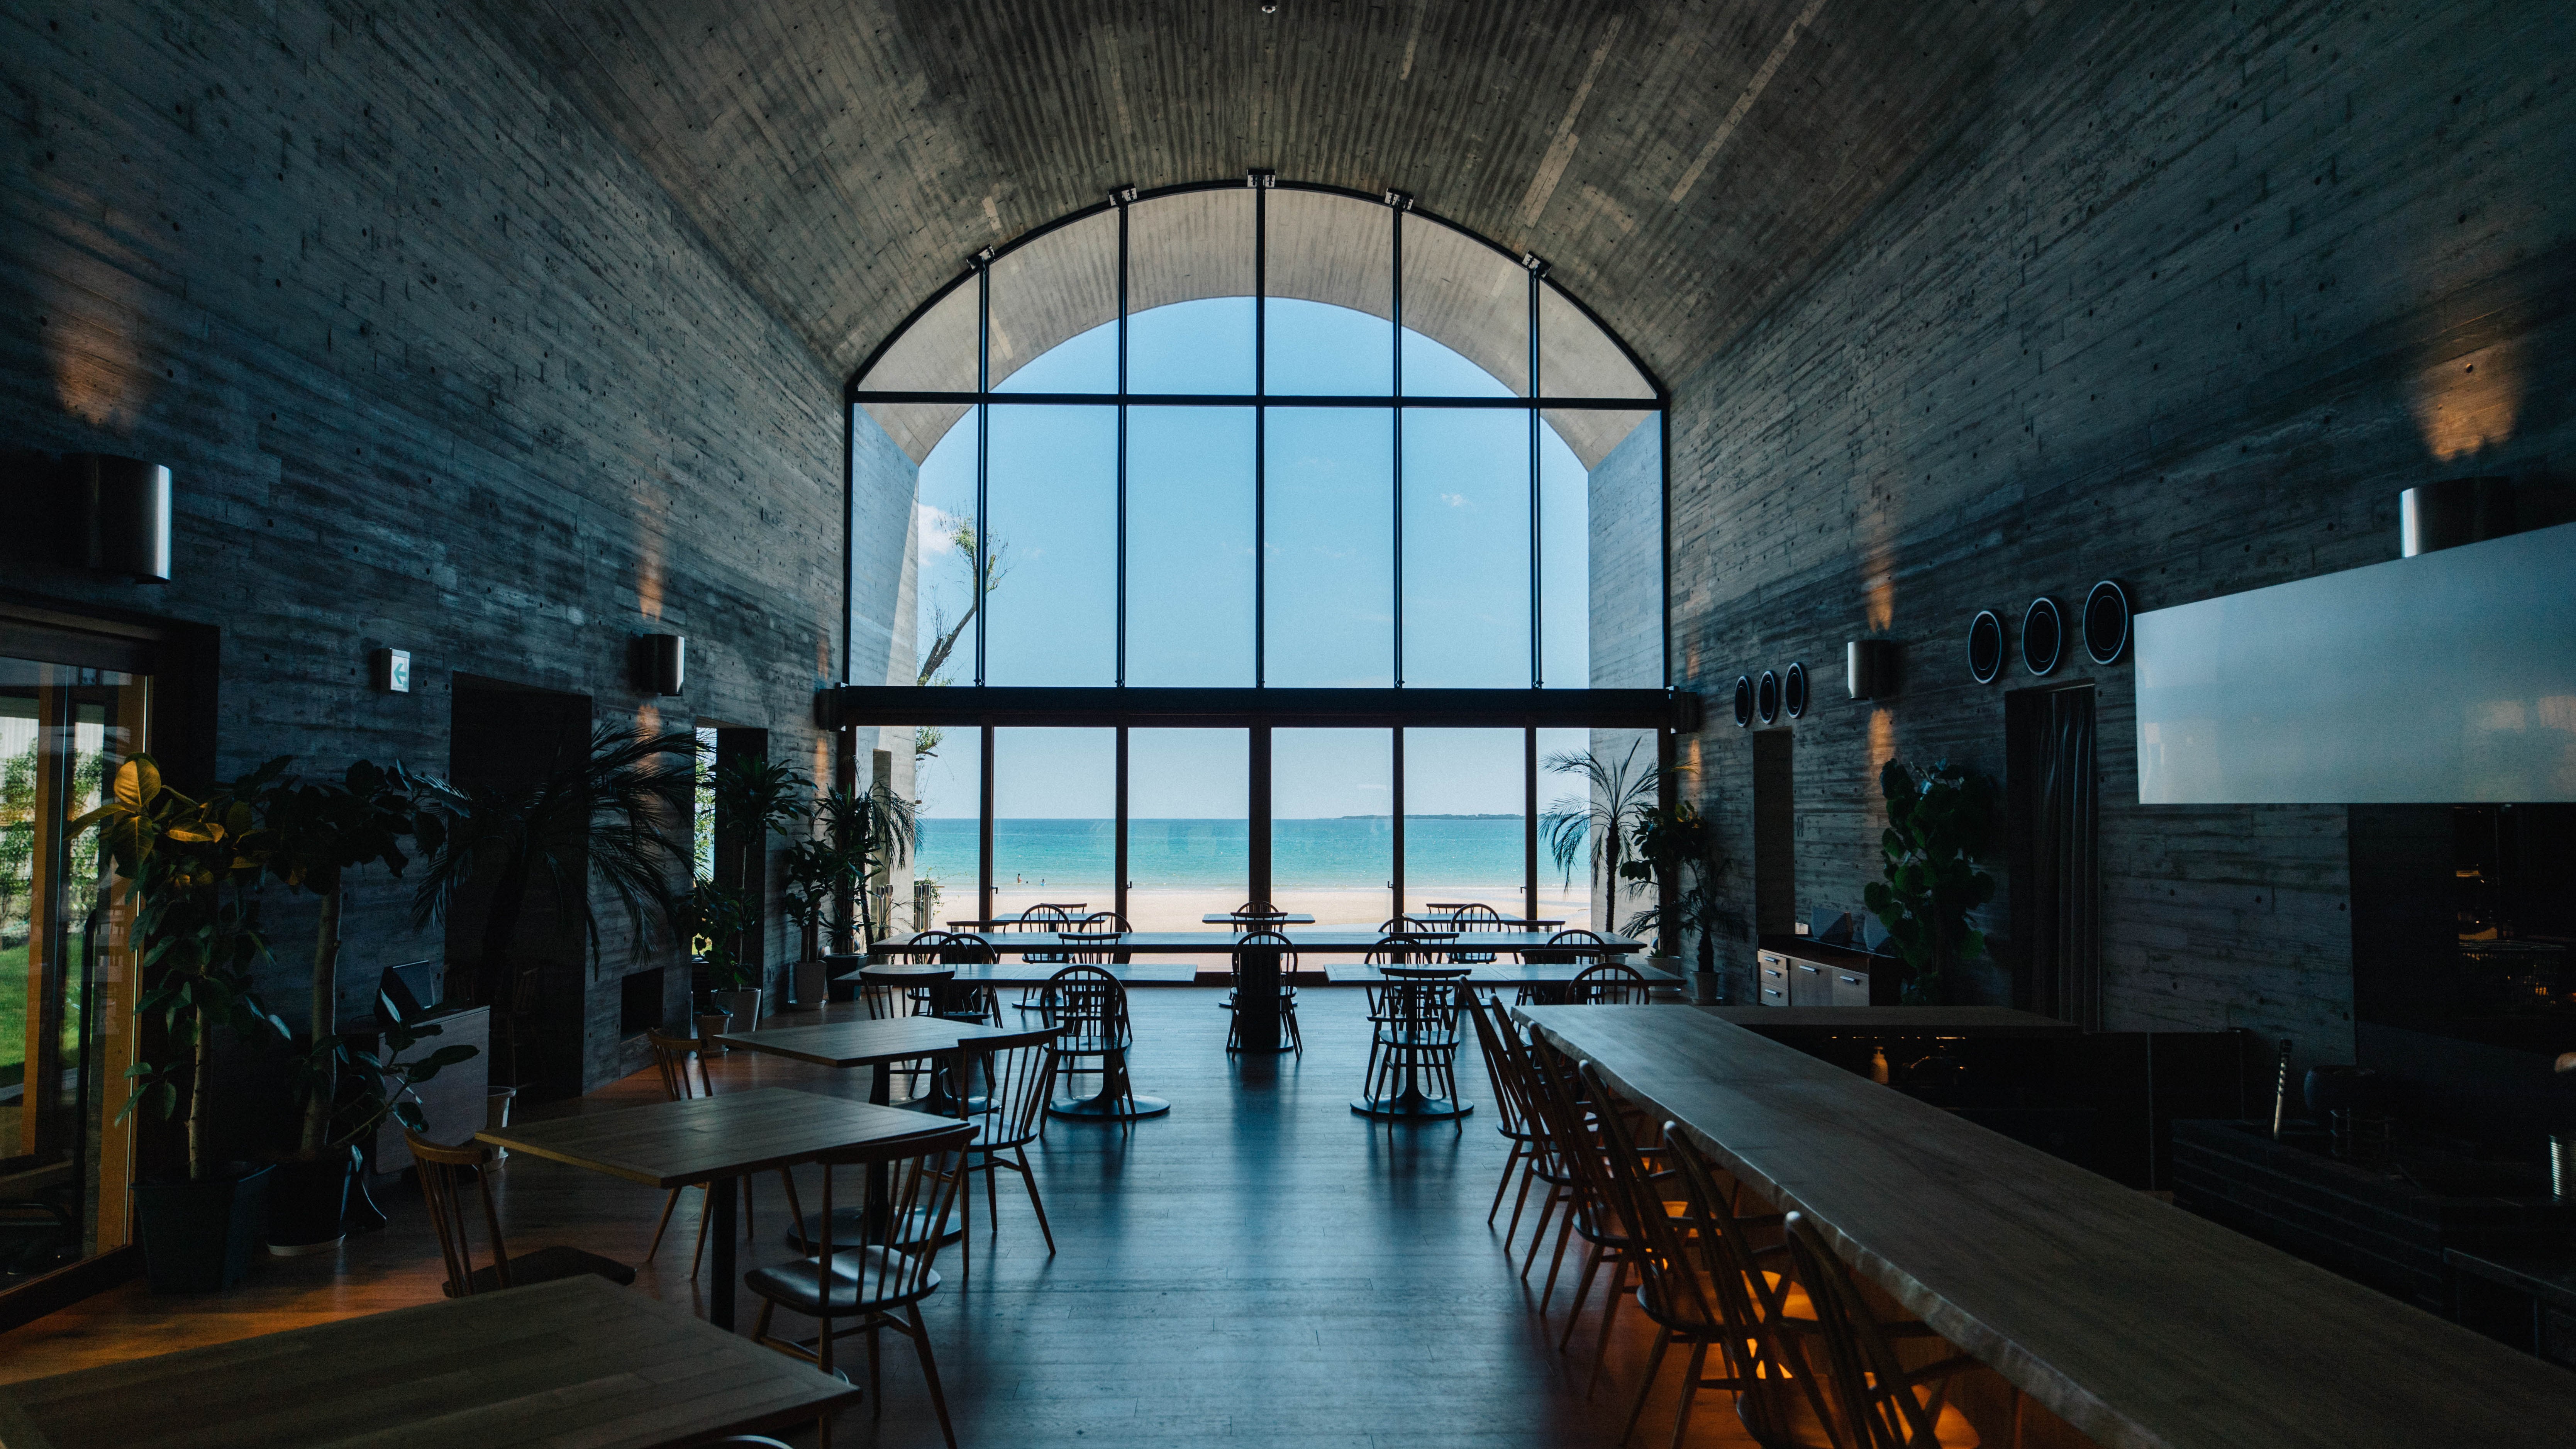 レストラン・レセプションが位置するセントラル棟からは、特徴的なアーチ窓越しに美しい海が広がります。